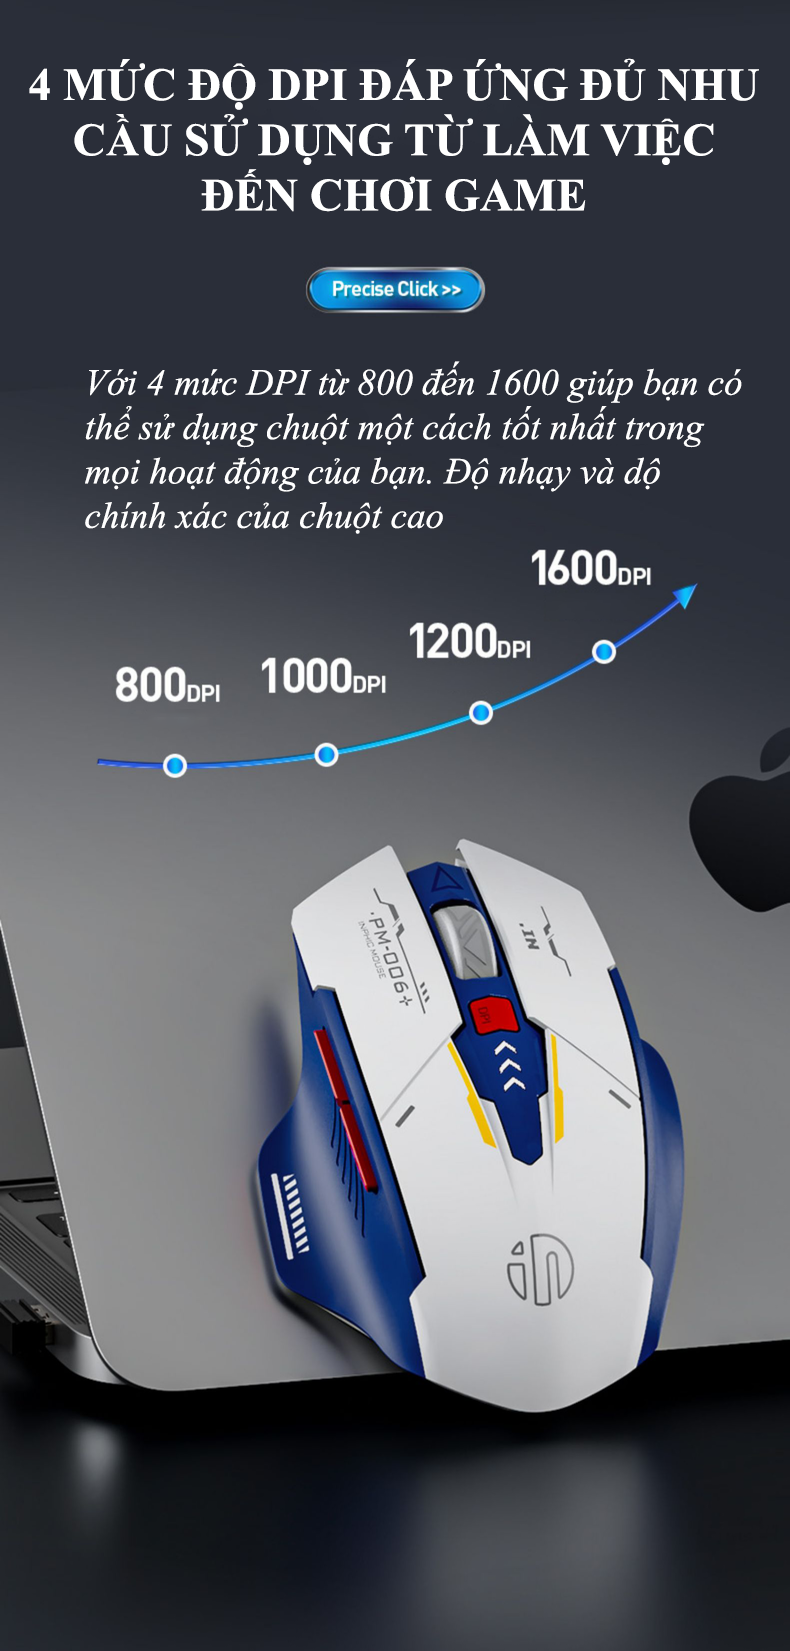 Chuột không dây INPHIC A9 sử dụng pin sạc kết nối Bluetooth và chip USB 2.4G thiết kế kiểu dáng xe đua cool ngầu dành cho game thủ